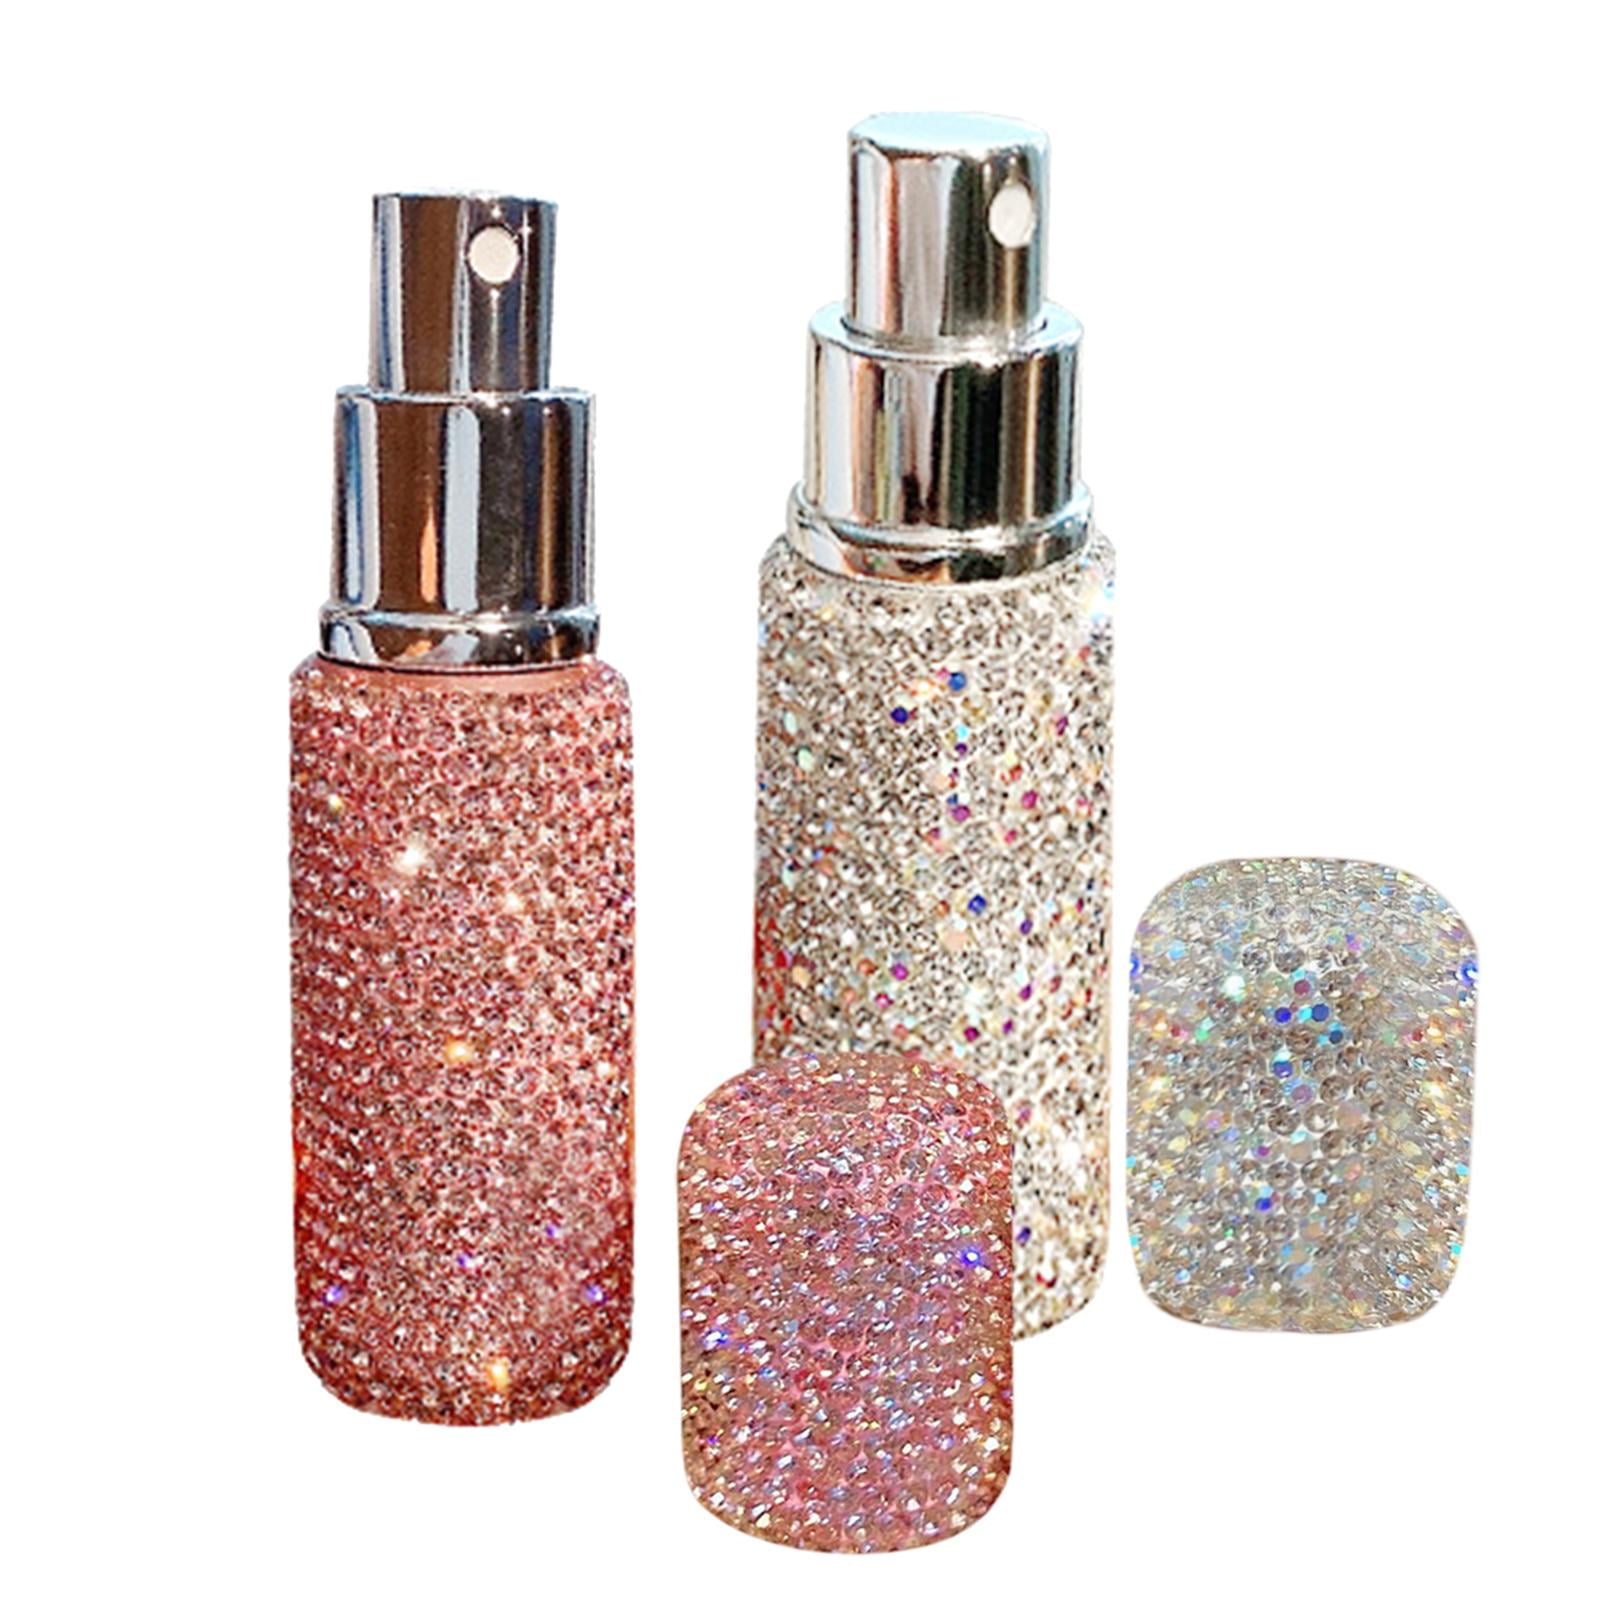 60ML Sparkle Spray or Pump Bottle. Glitter Perfume Bottle. 3 